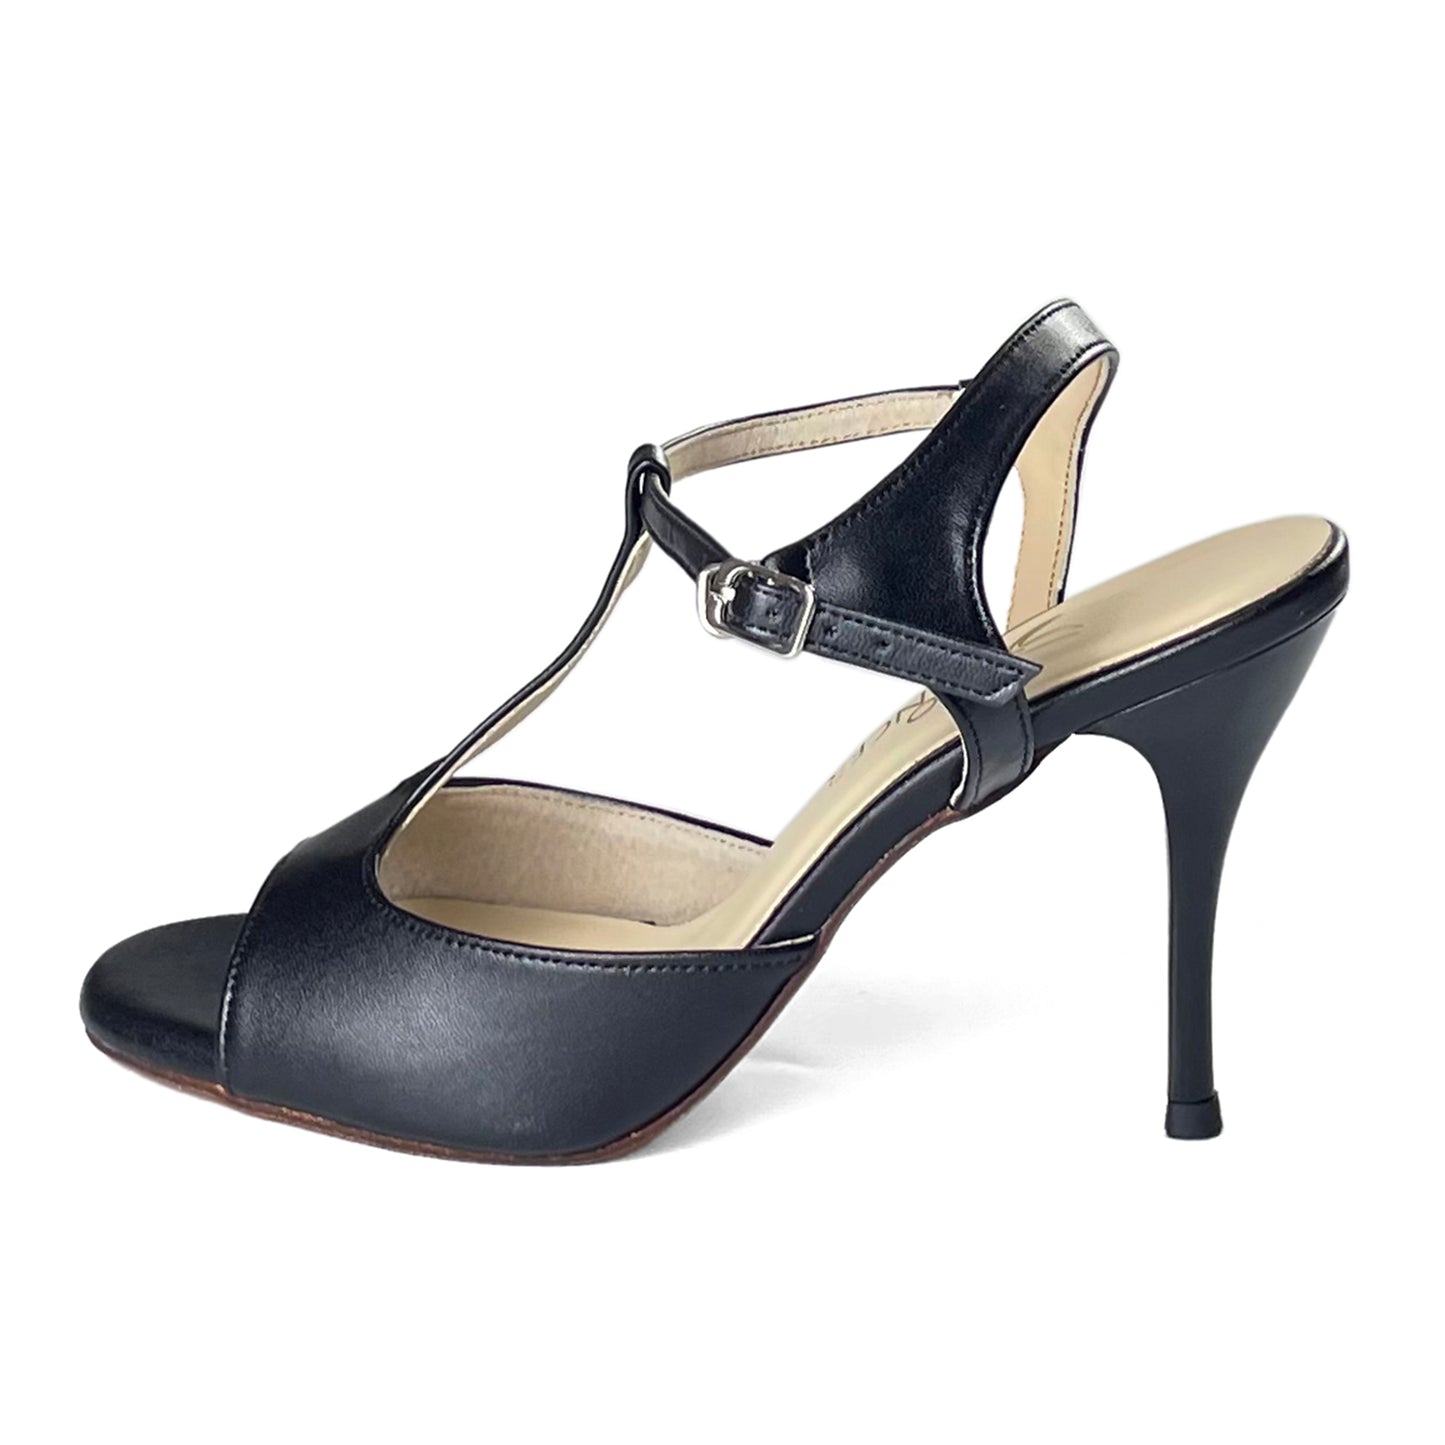 Pro Dancer Women's Tango Shoes Argentina High Heel Dance Sandals Leather Sole Black (PD-9012D)